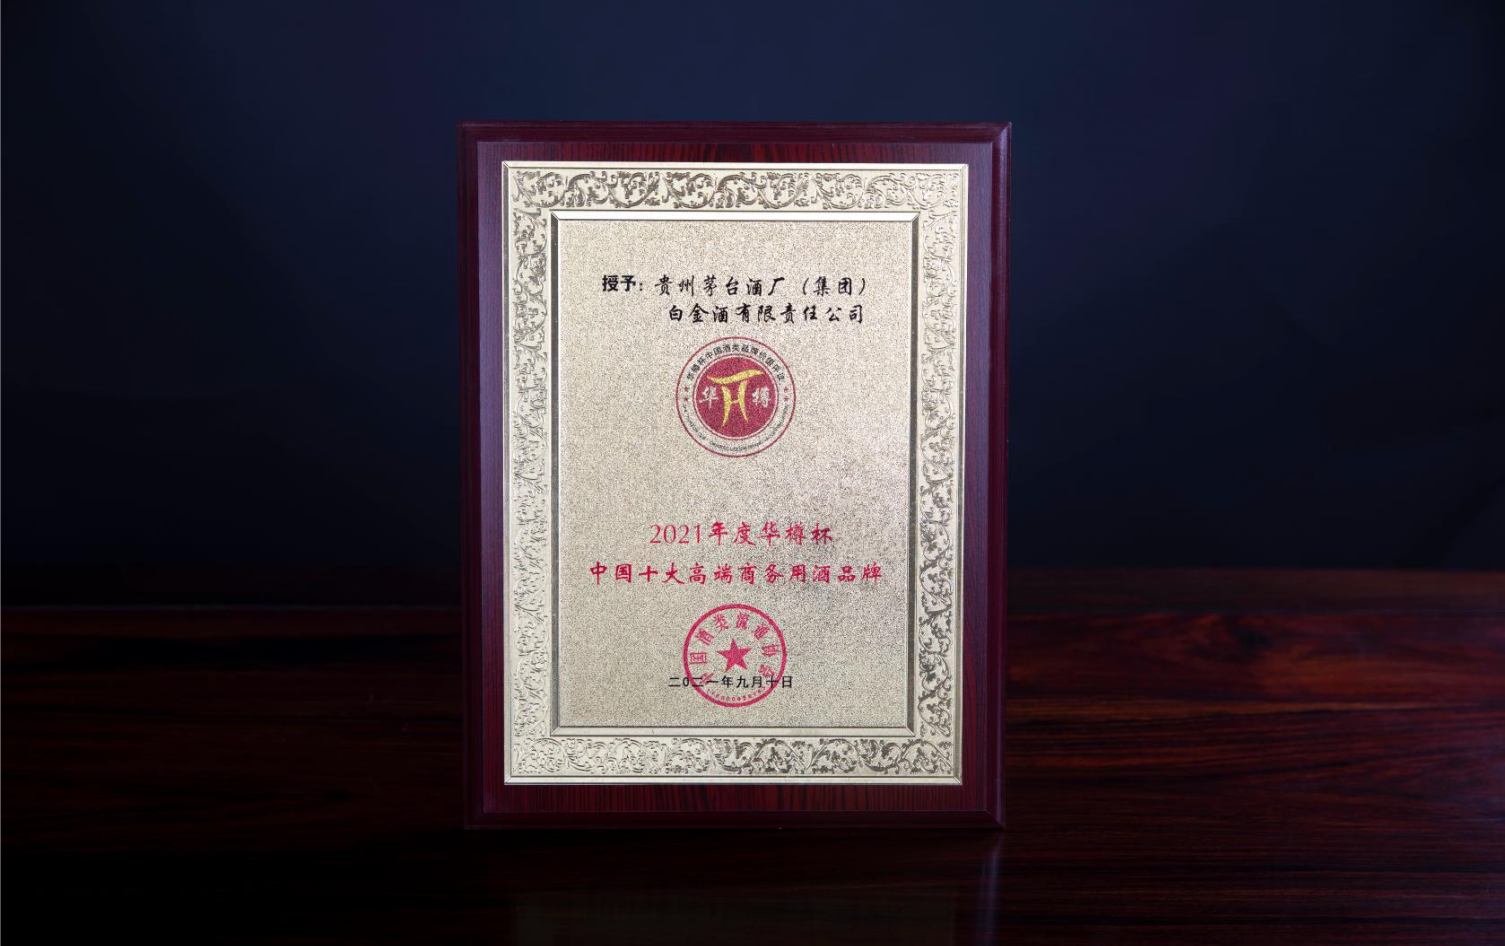 2021年度華樽杯中國十大高端商務用酒品牌